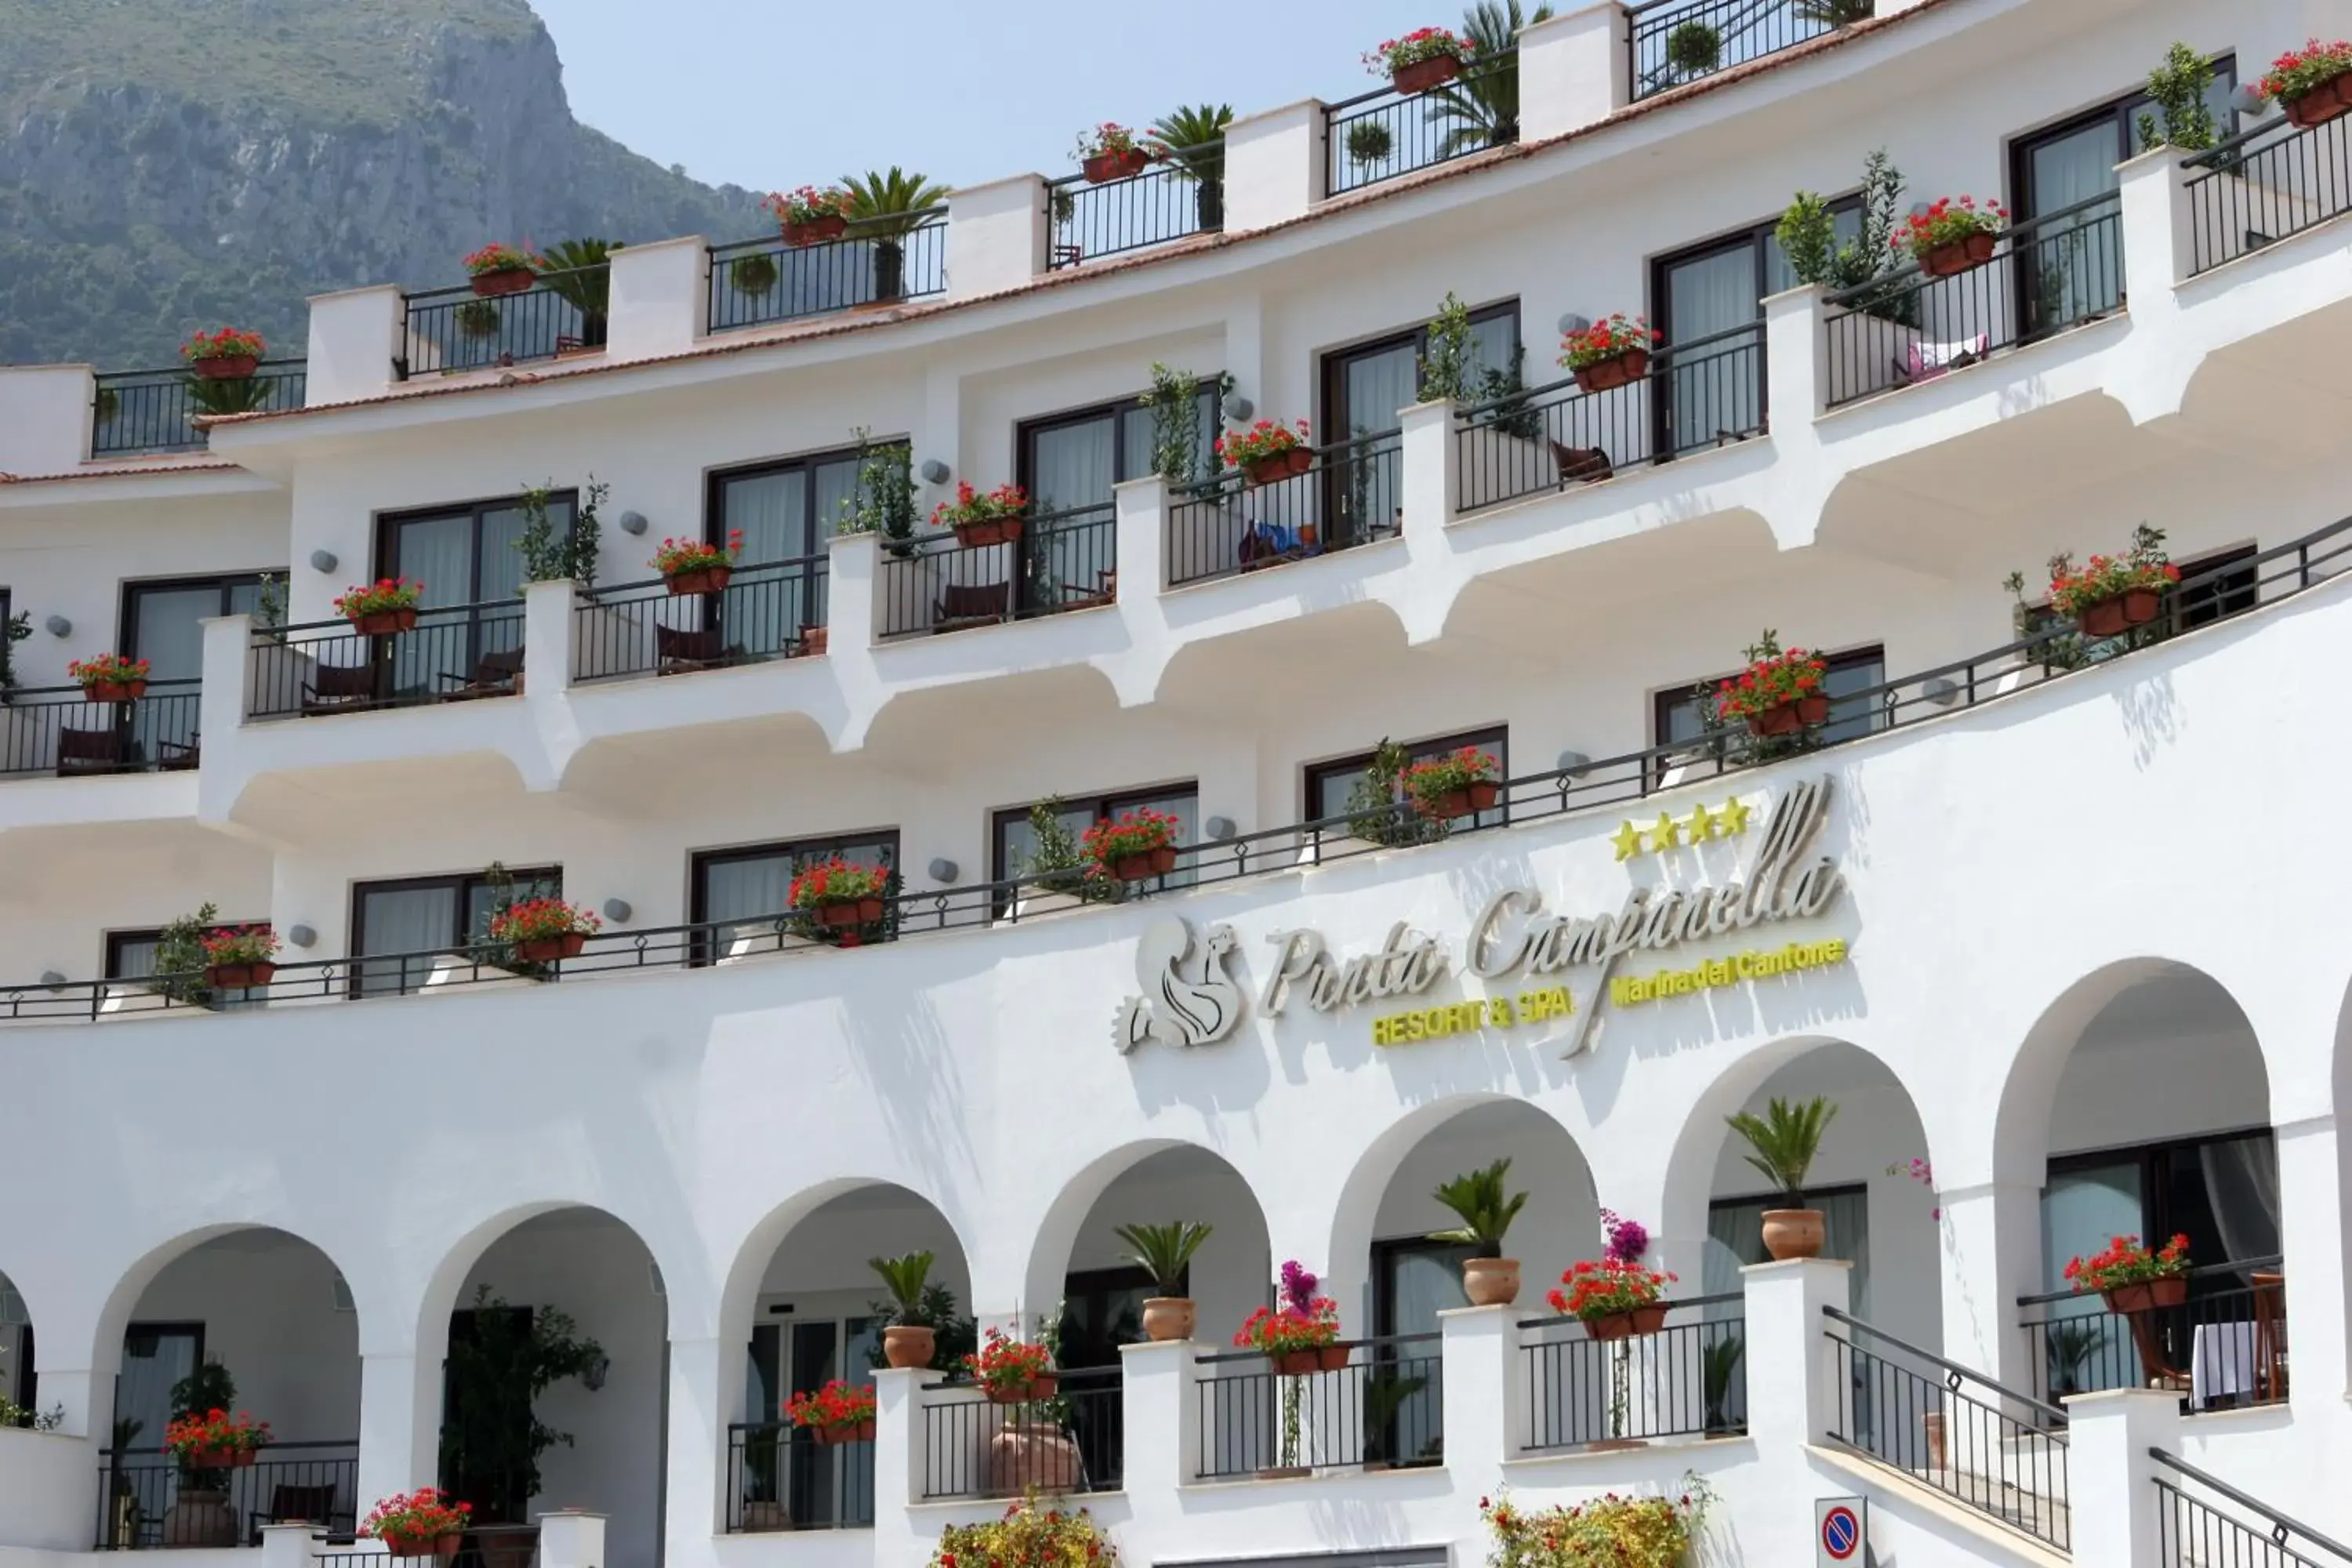 Facade/entrance in Punta Campanella Resort & Spa